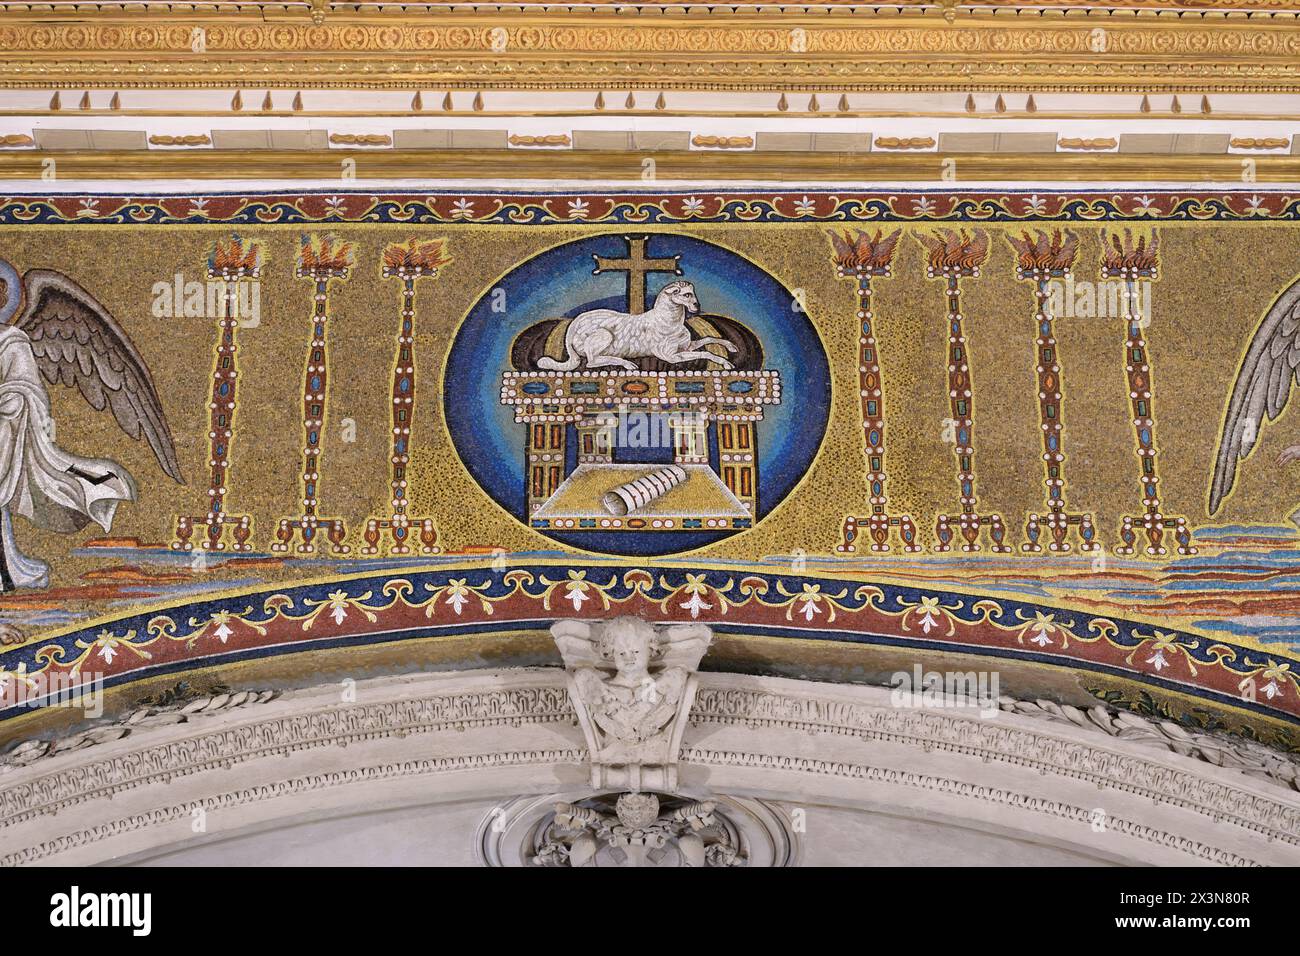 Agnus dei (Agnello di Dio) - dettaglio del mosaico dell'arco trionfale nella basilica di Cosma e Damiano (Santi Cosma e Damiano) a Roma, Italia Foto Stock